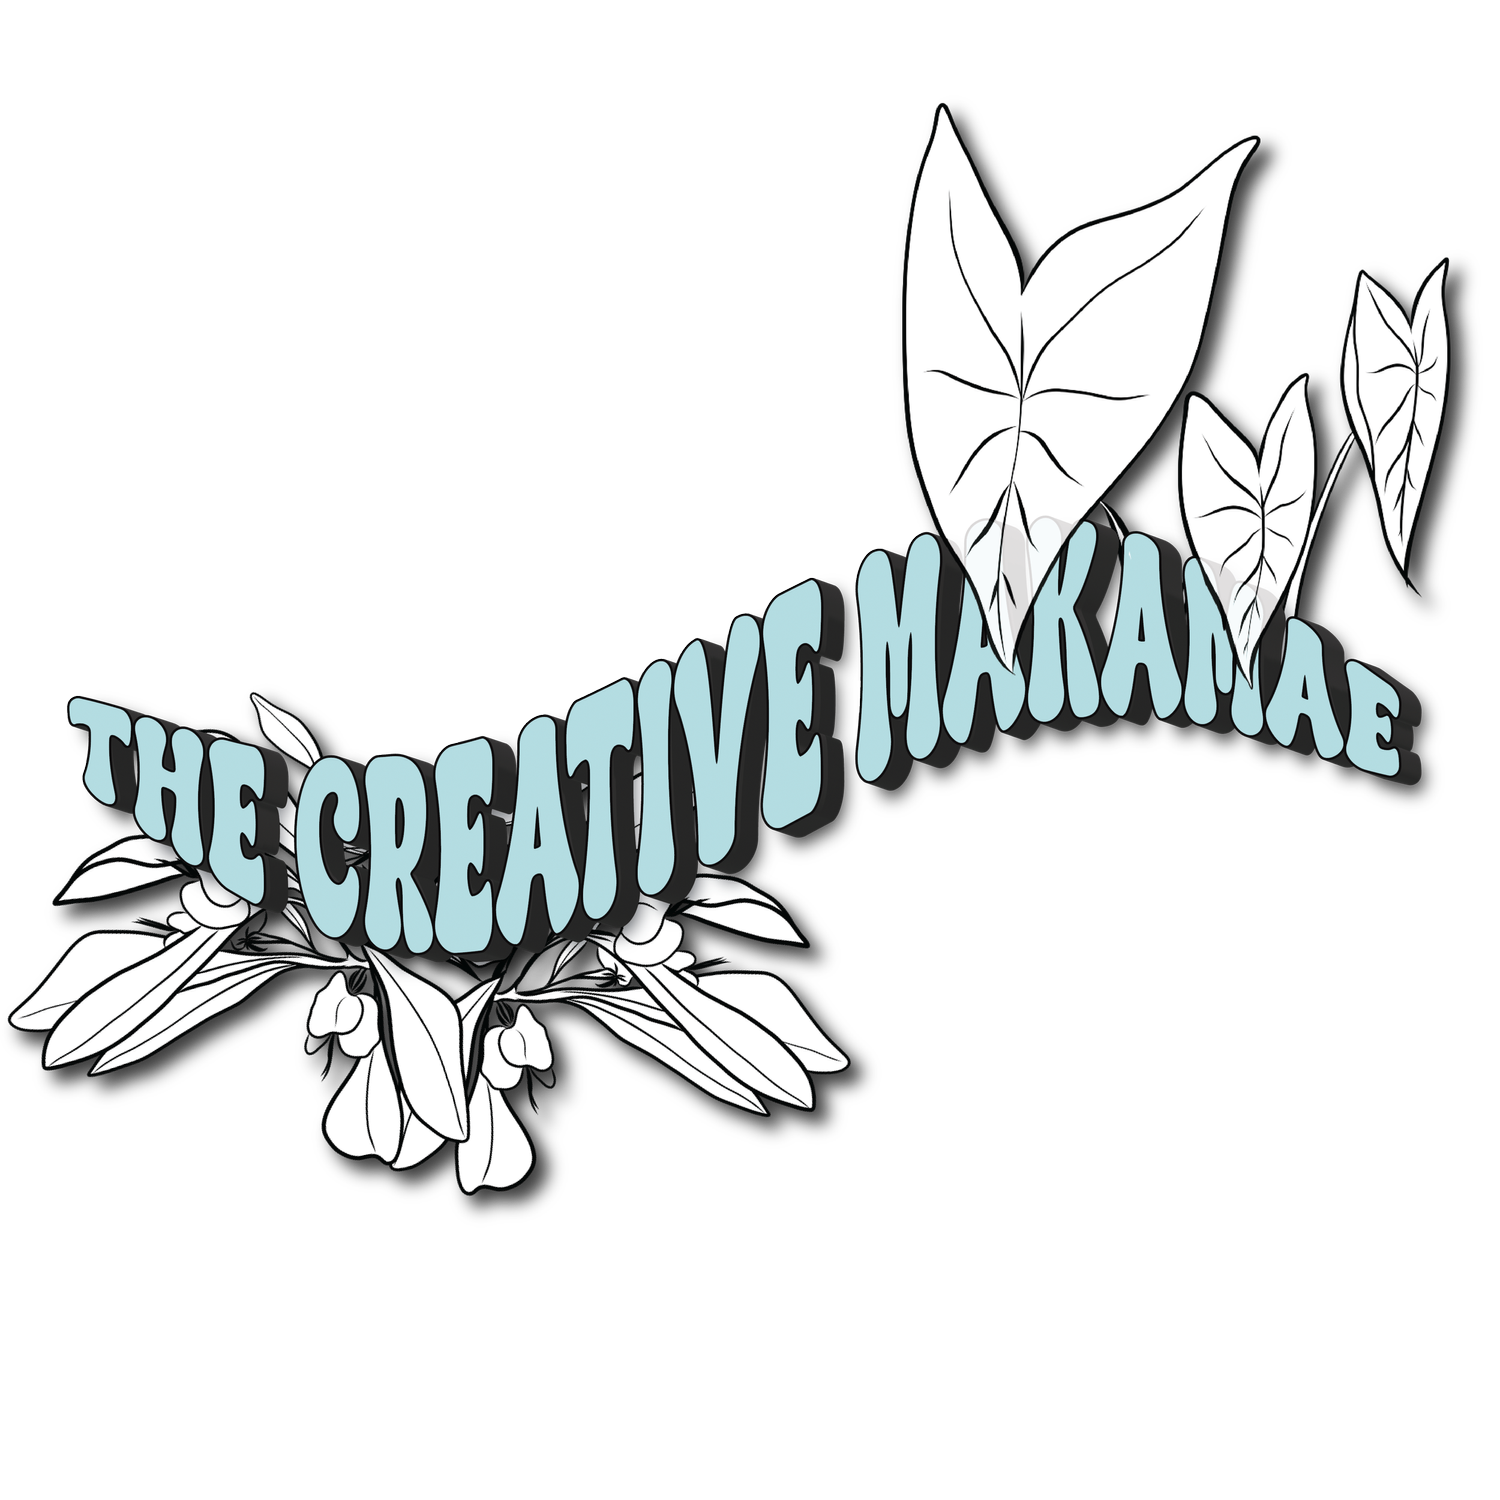 The Creative Makamae